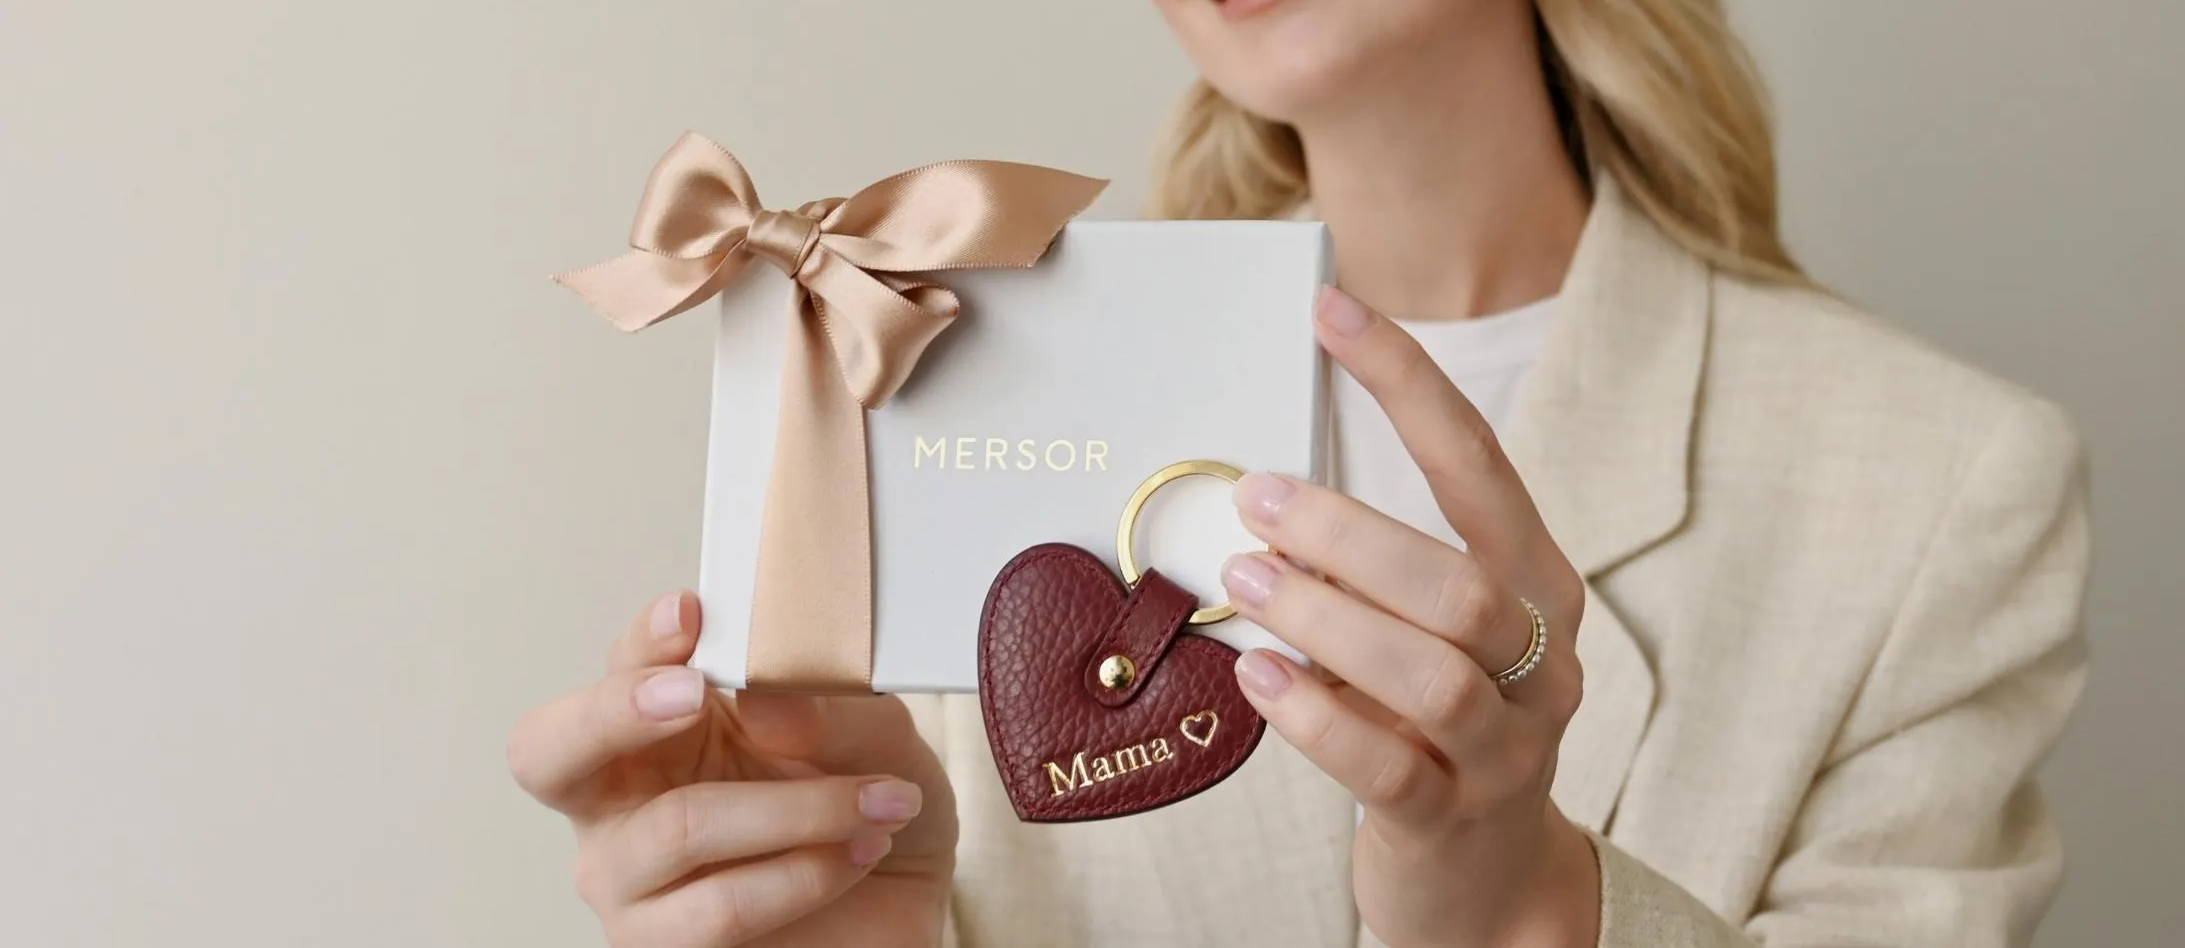 Personalisierte Geschenke für Mama zum Muttertag